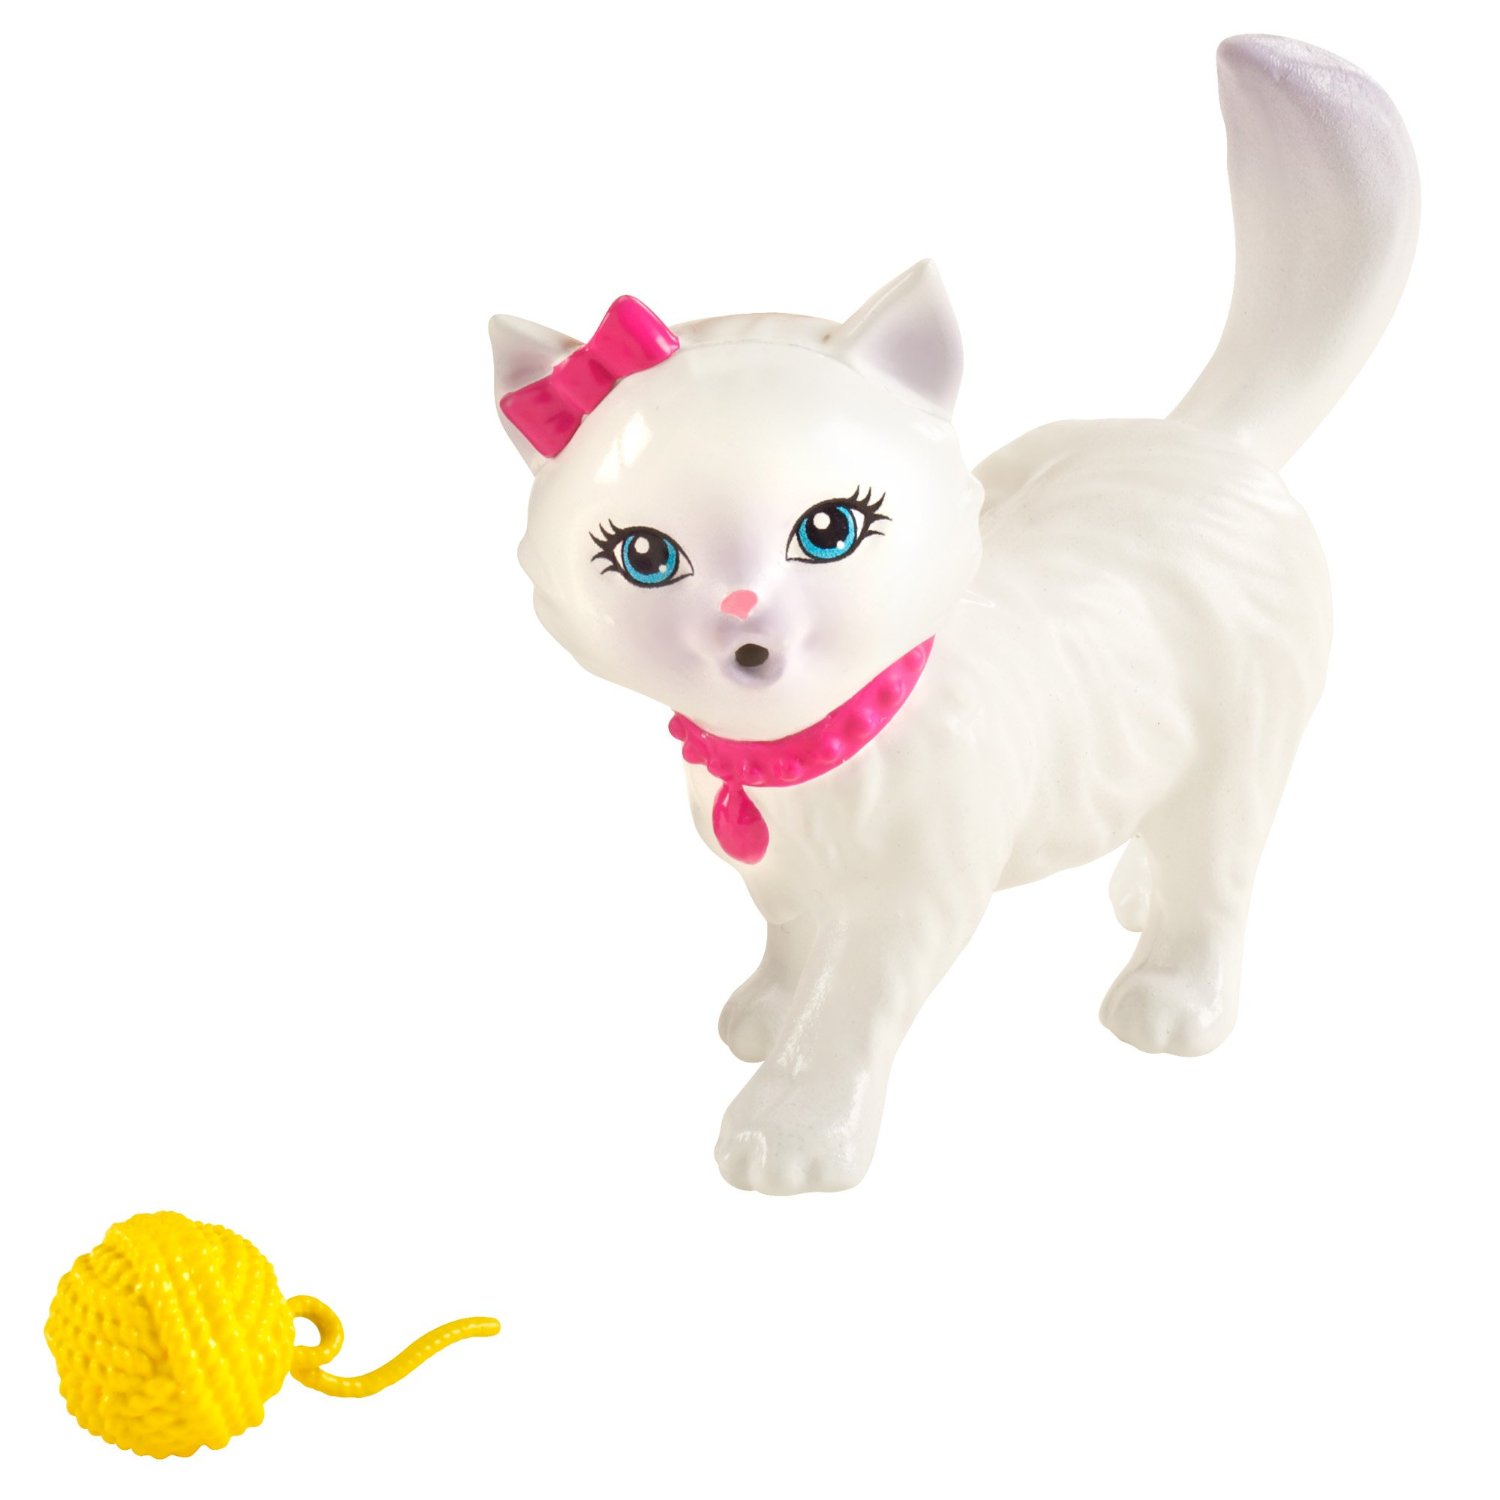 Включи кукла кот. Барби кошка Блисса. Игрушка «котенок». Барби с кошкой. Игрушка Барби с кошкой.